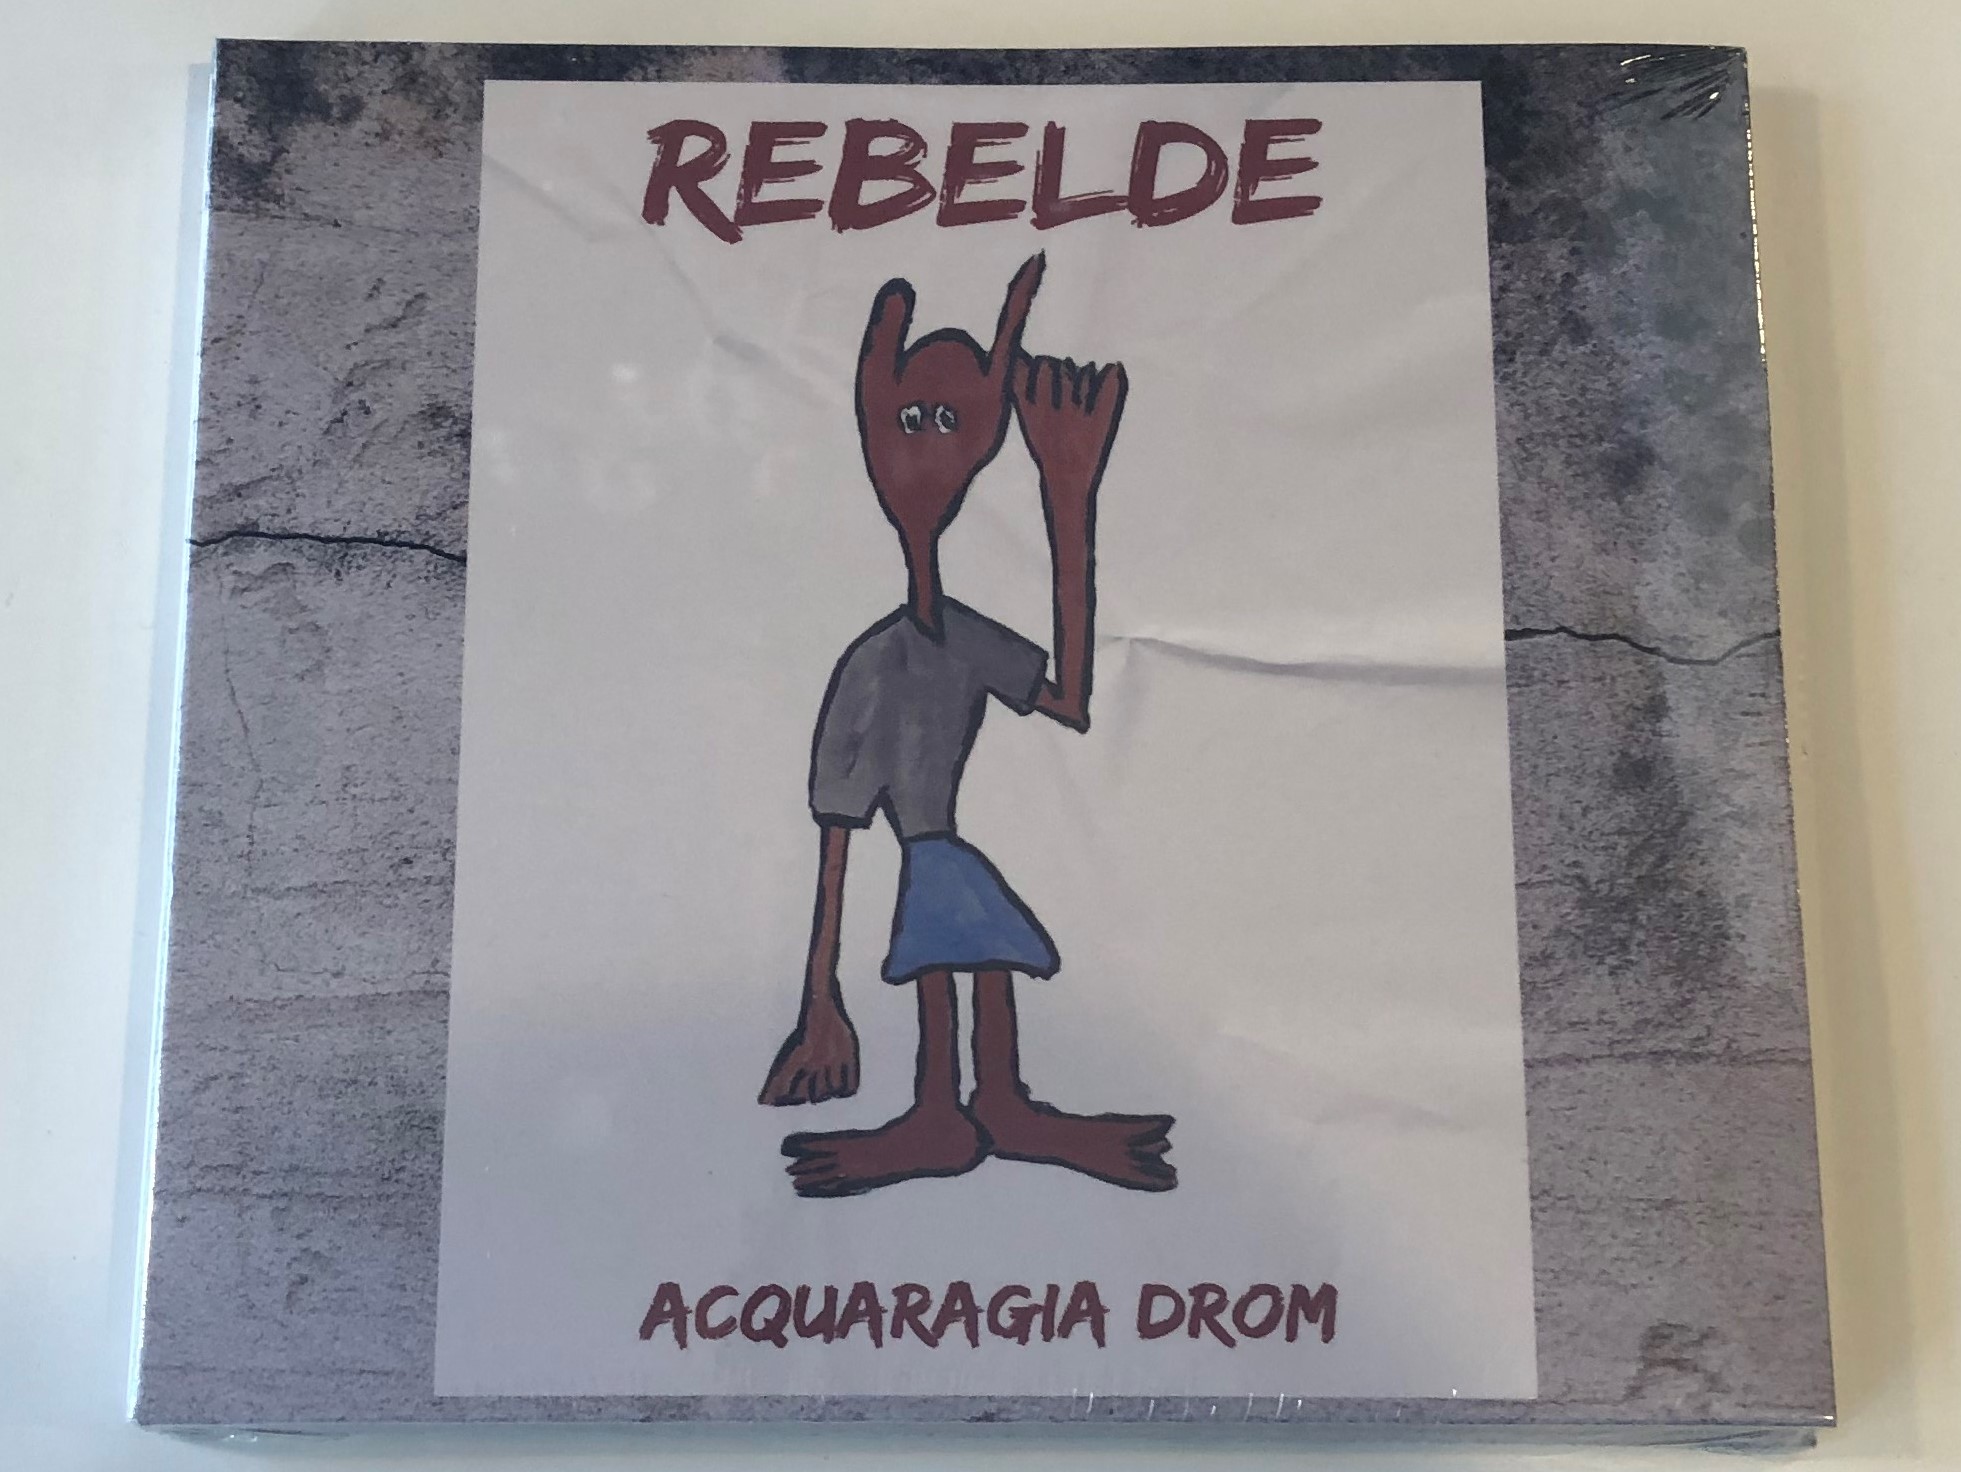 rebelde-acquaragia-drom-narrator-records-audio-cd-2017-5998733101550-1-.jpg